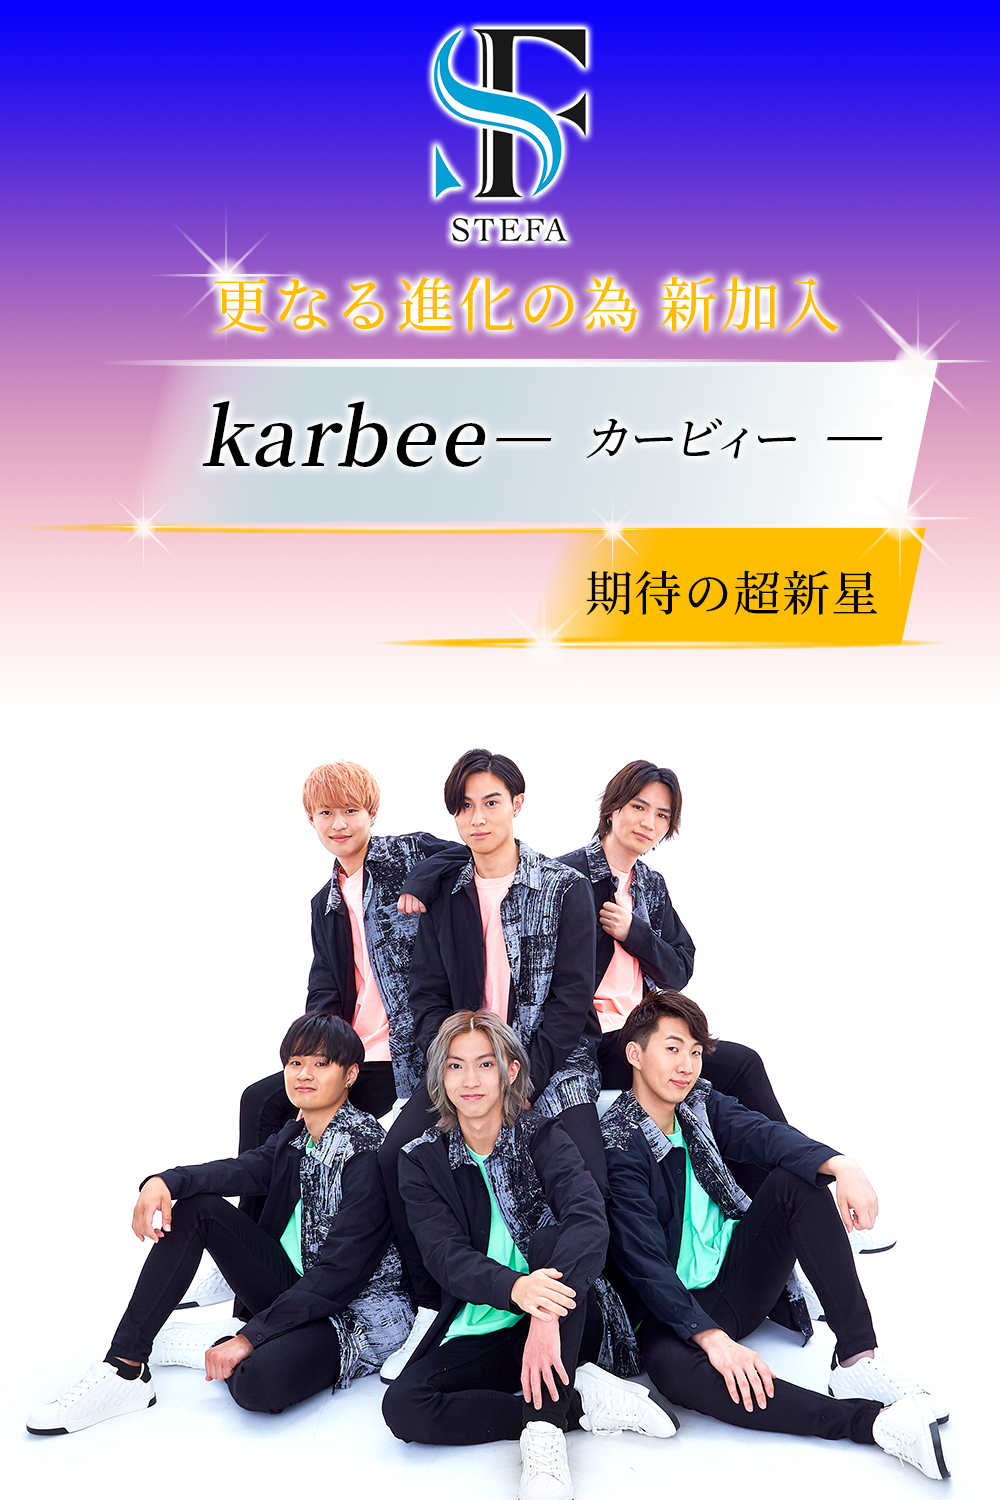 更なる進化の為 新加入 期待の超 新 星☆karbee☆『カービィー』